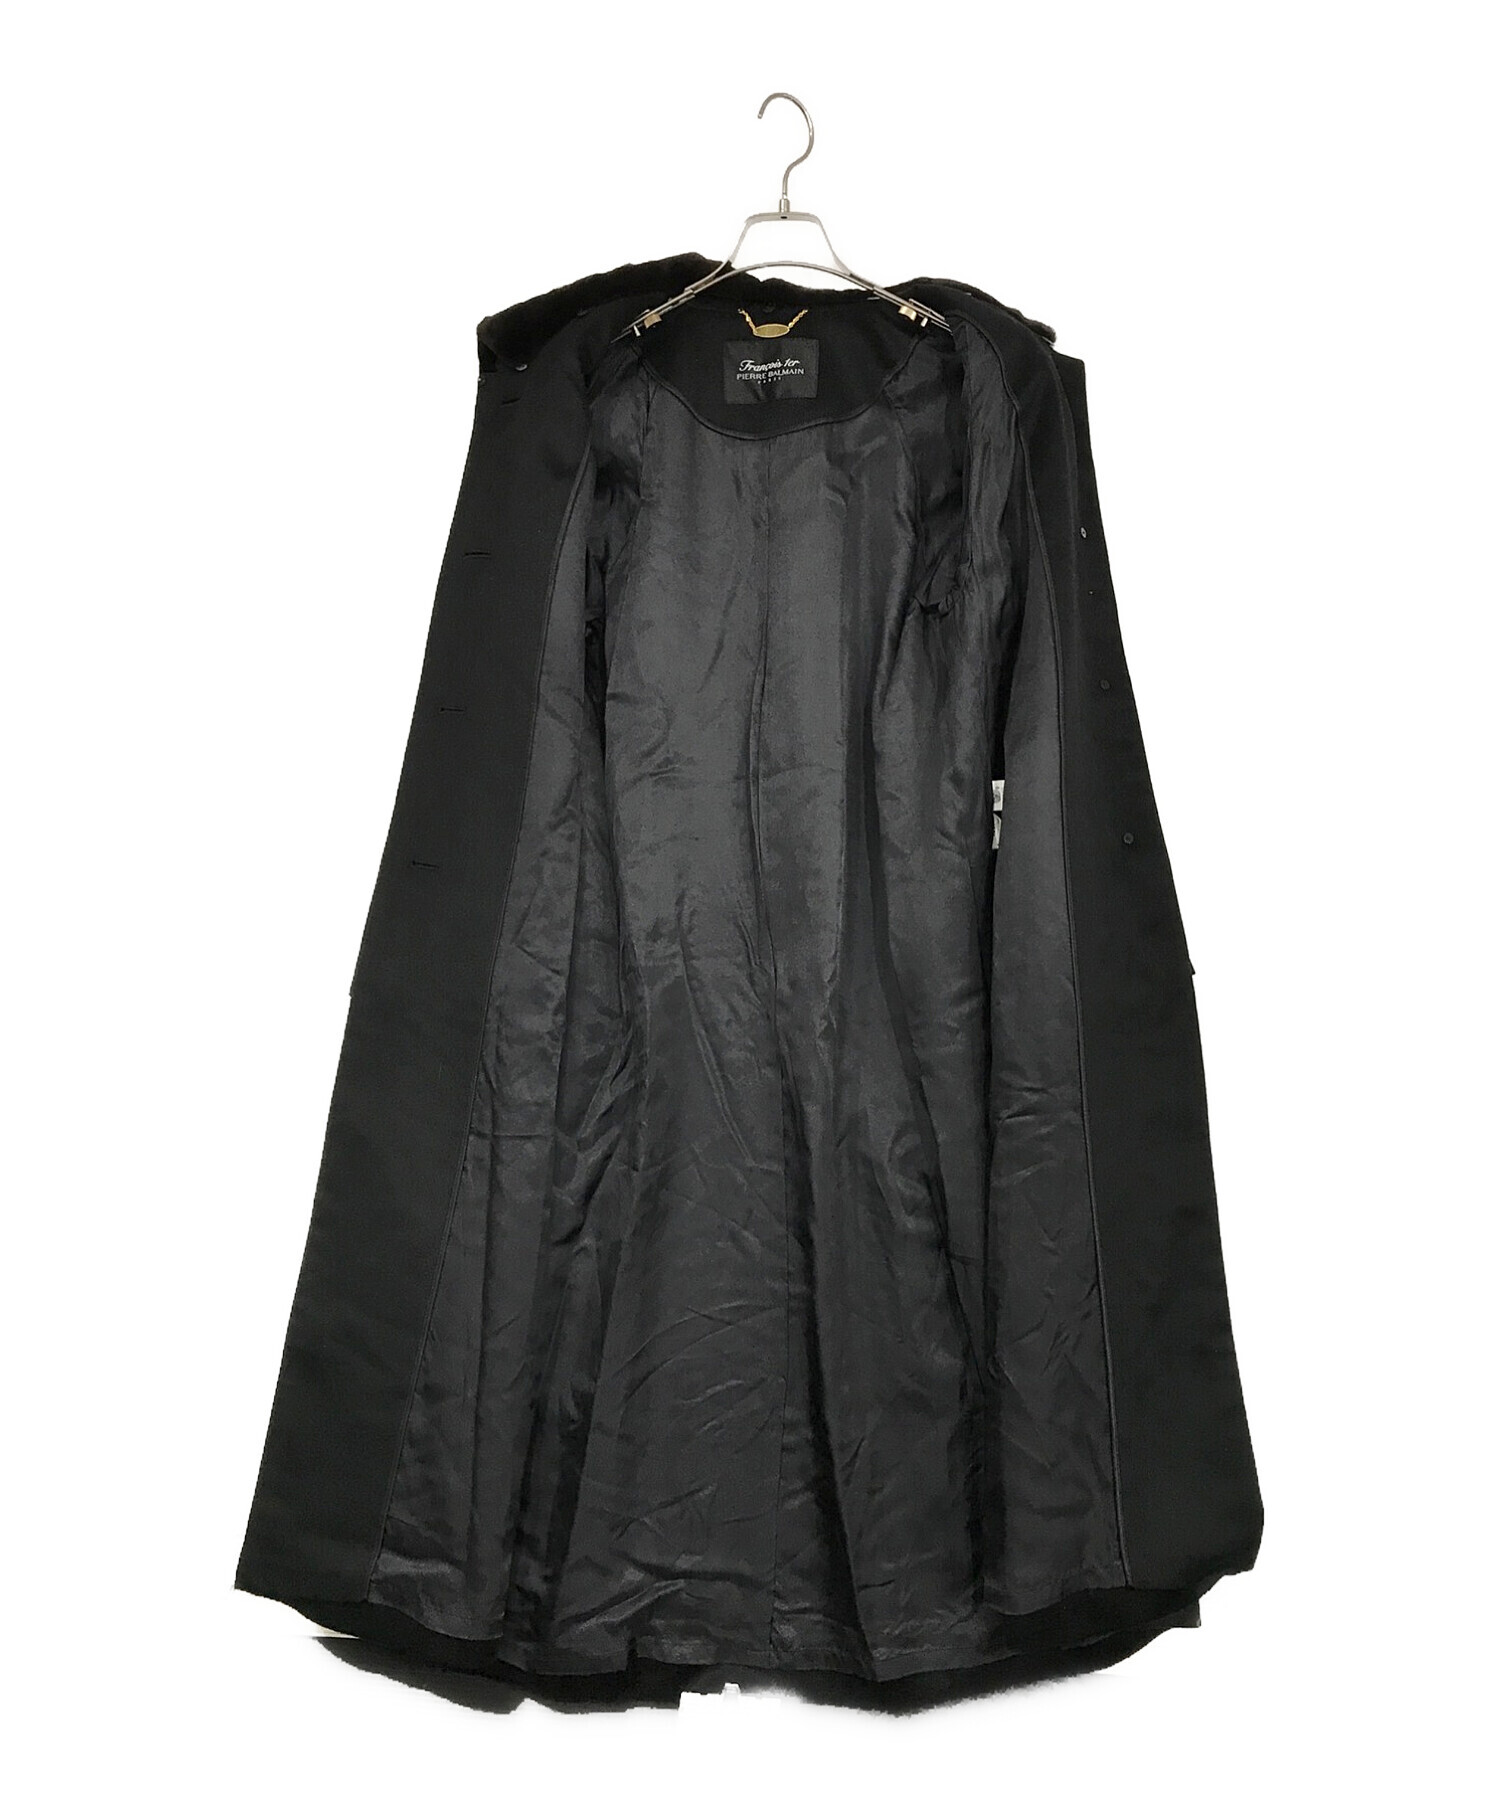 PIERRE BALMAIN (ピエールバルマン) カシミミンクヤコート ブラック サイズ:SIZE 7AR